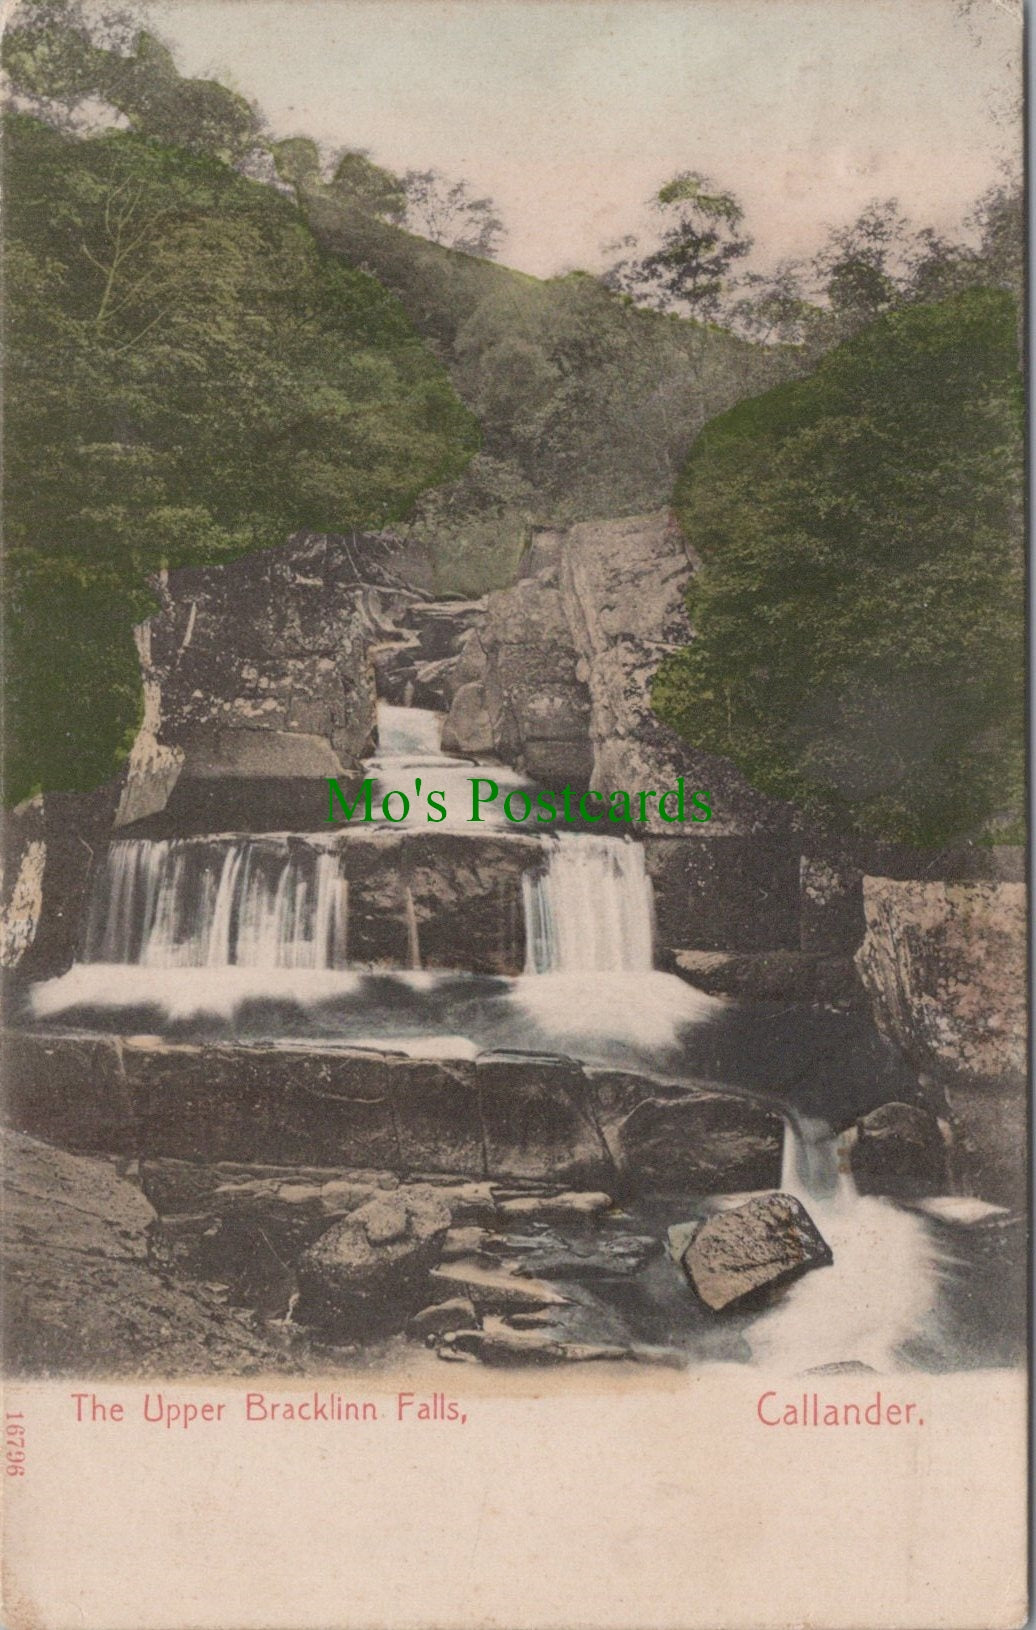 The Upper Bracklinn Falls, Callander